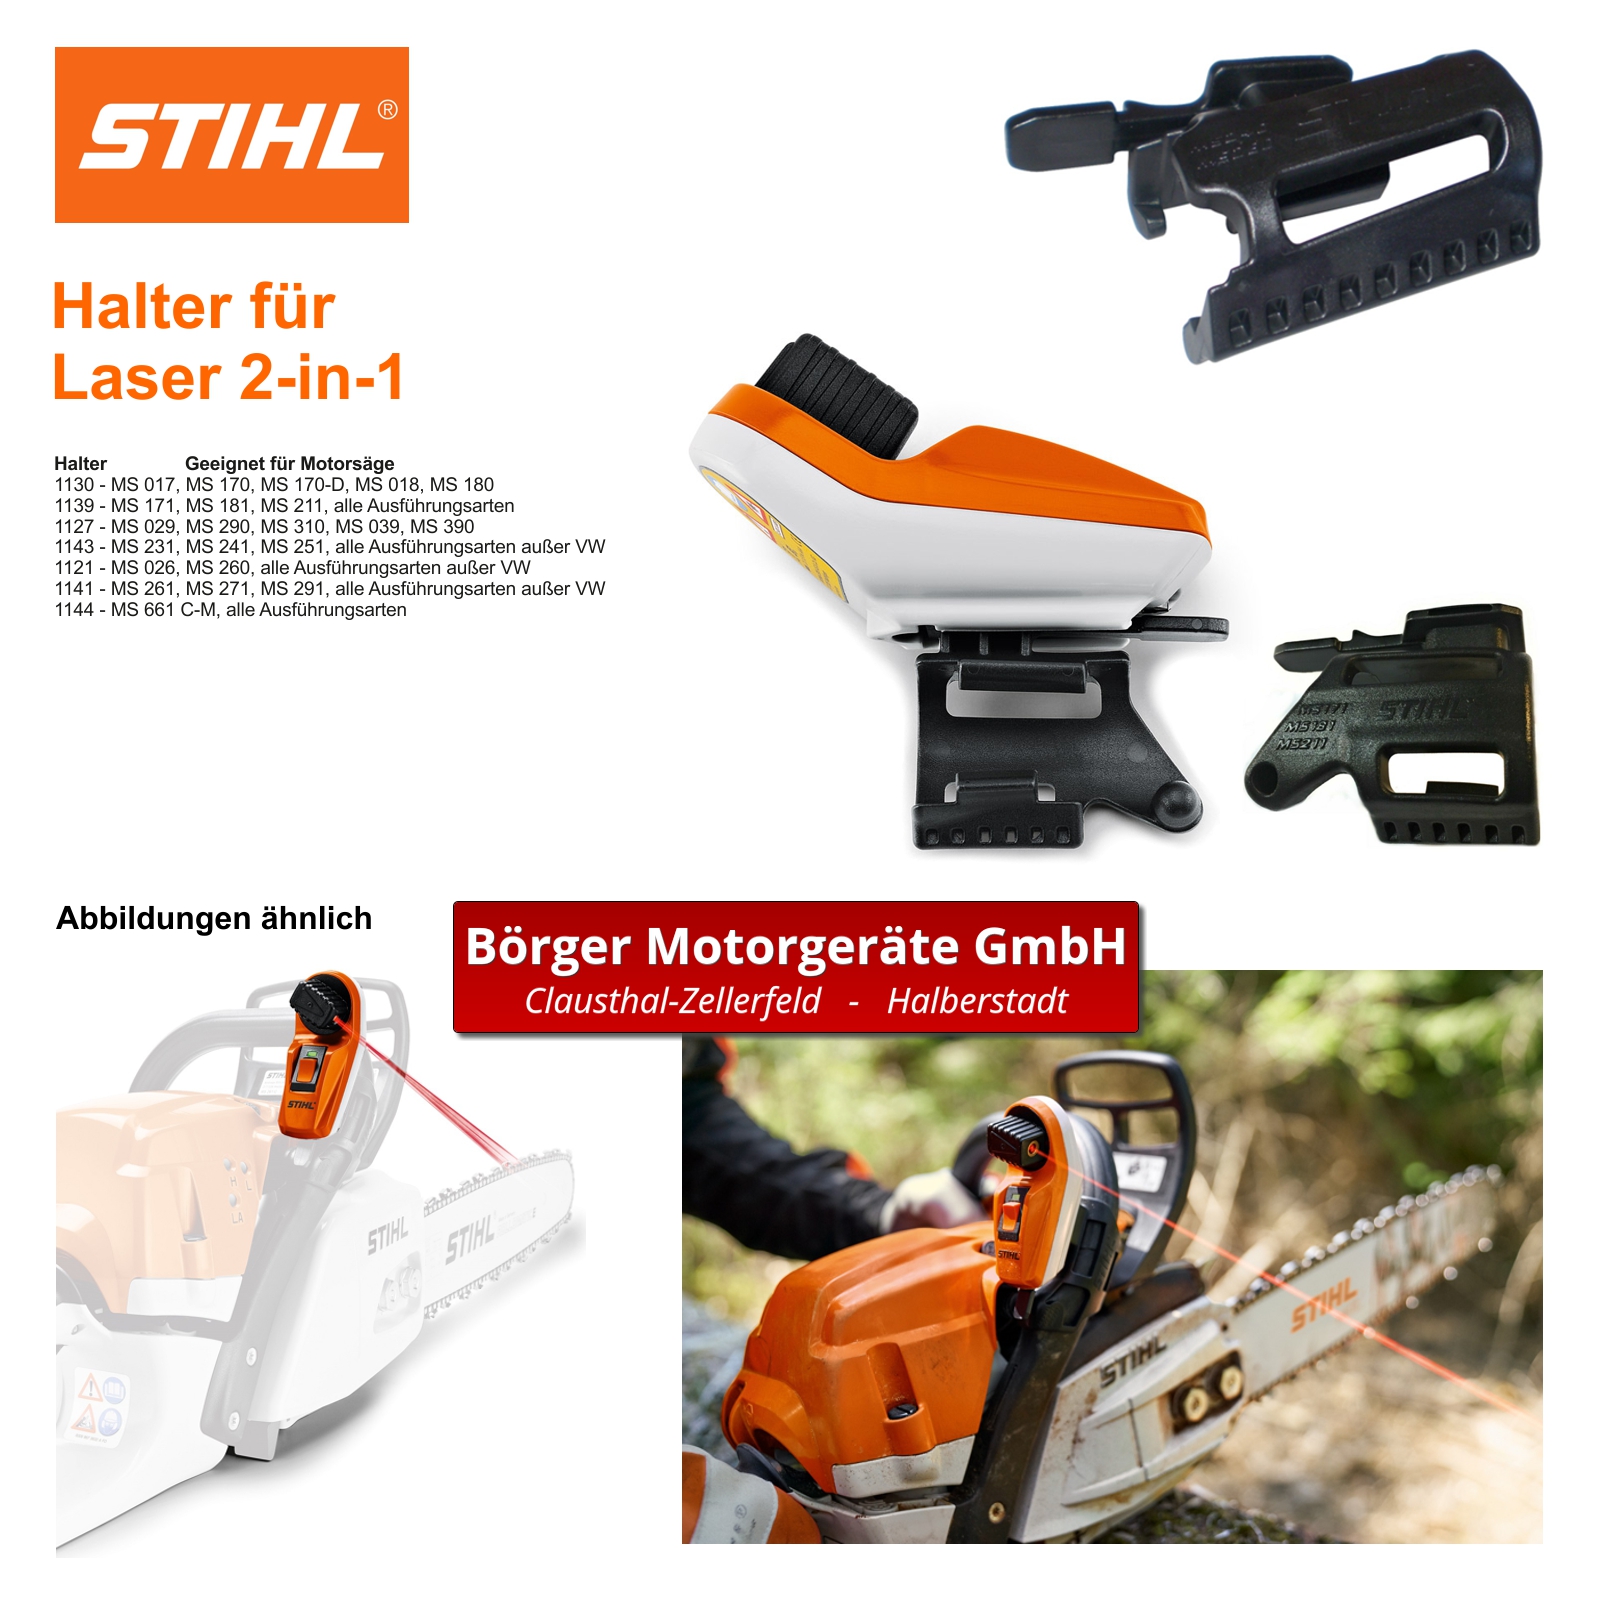 Stihl Laser 2 In 1 Stihl Halter für Laser 2-in-1 - 1121 791 5400 | Börger Motorgeräte GmbH